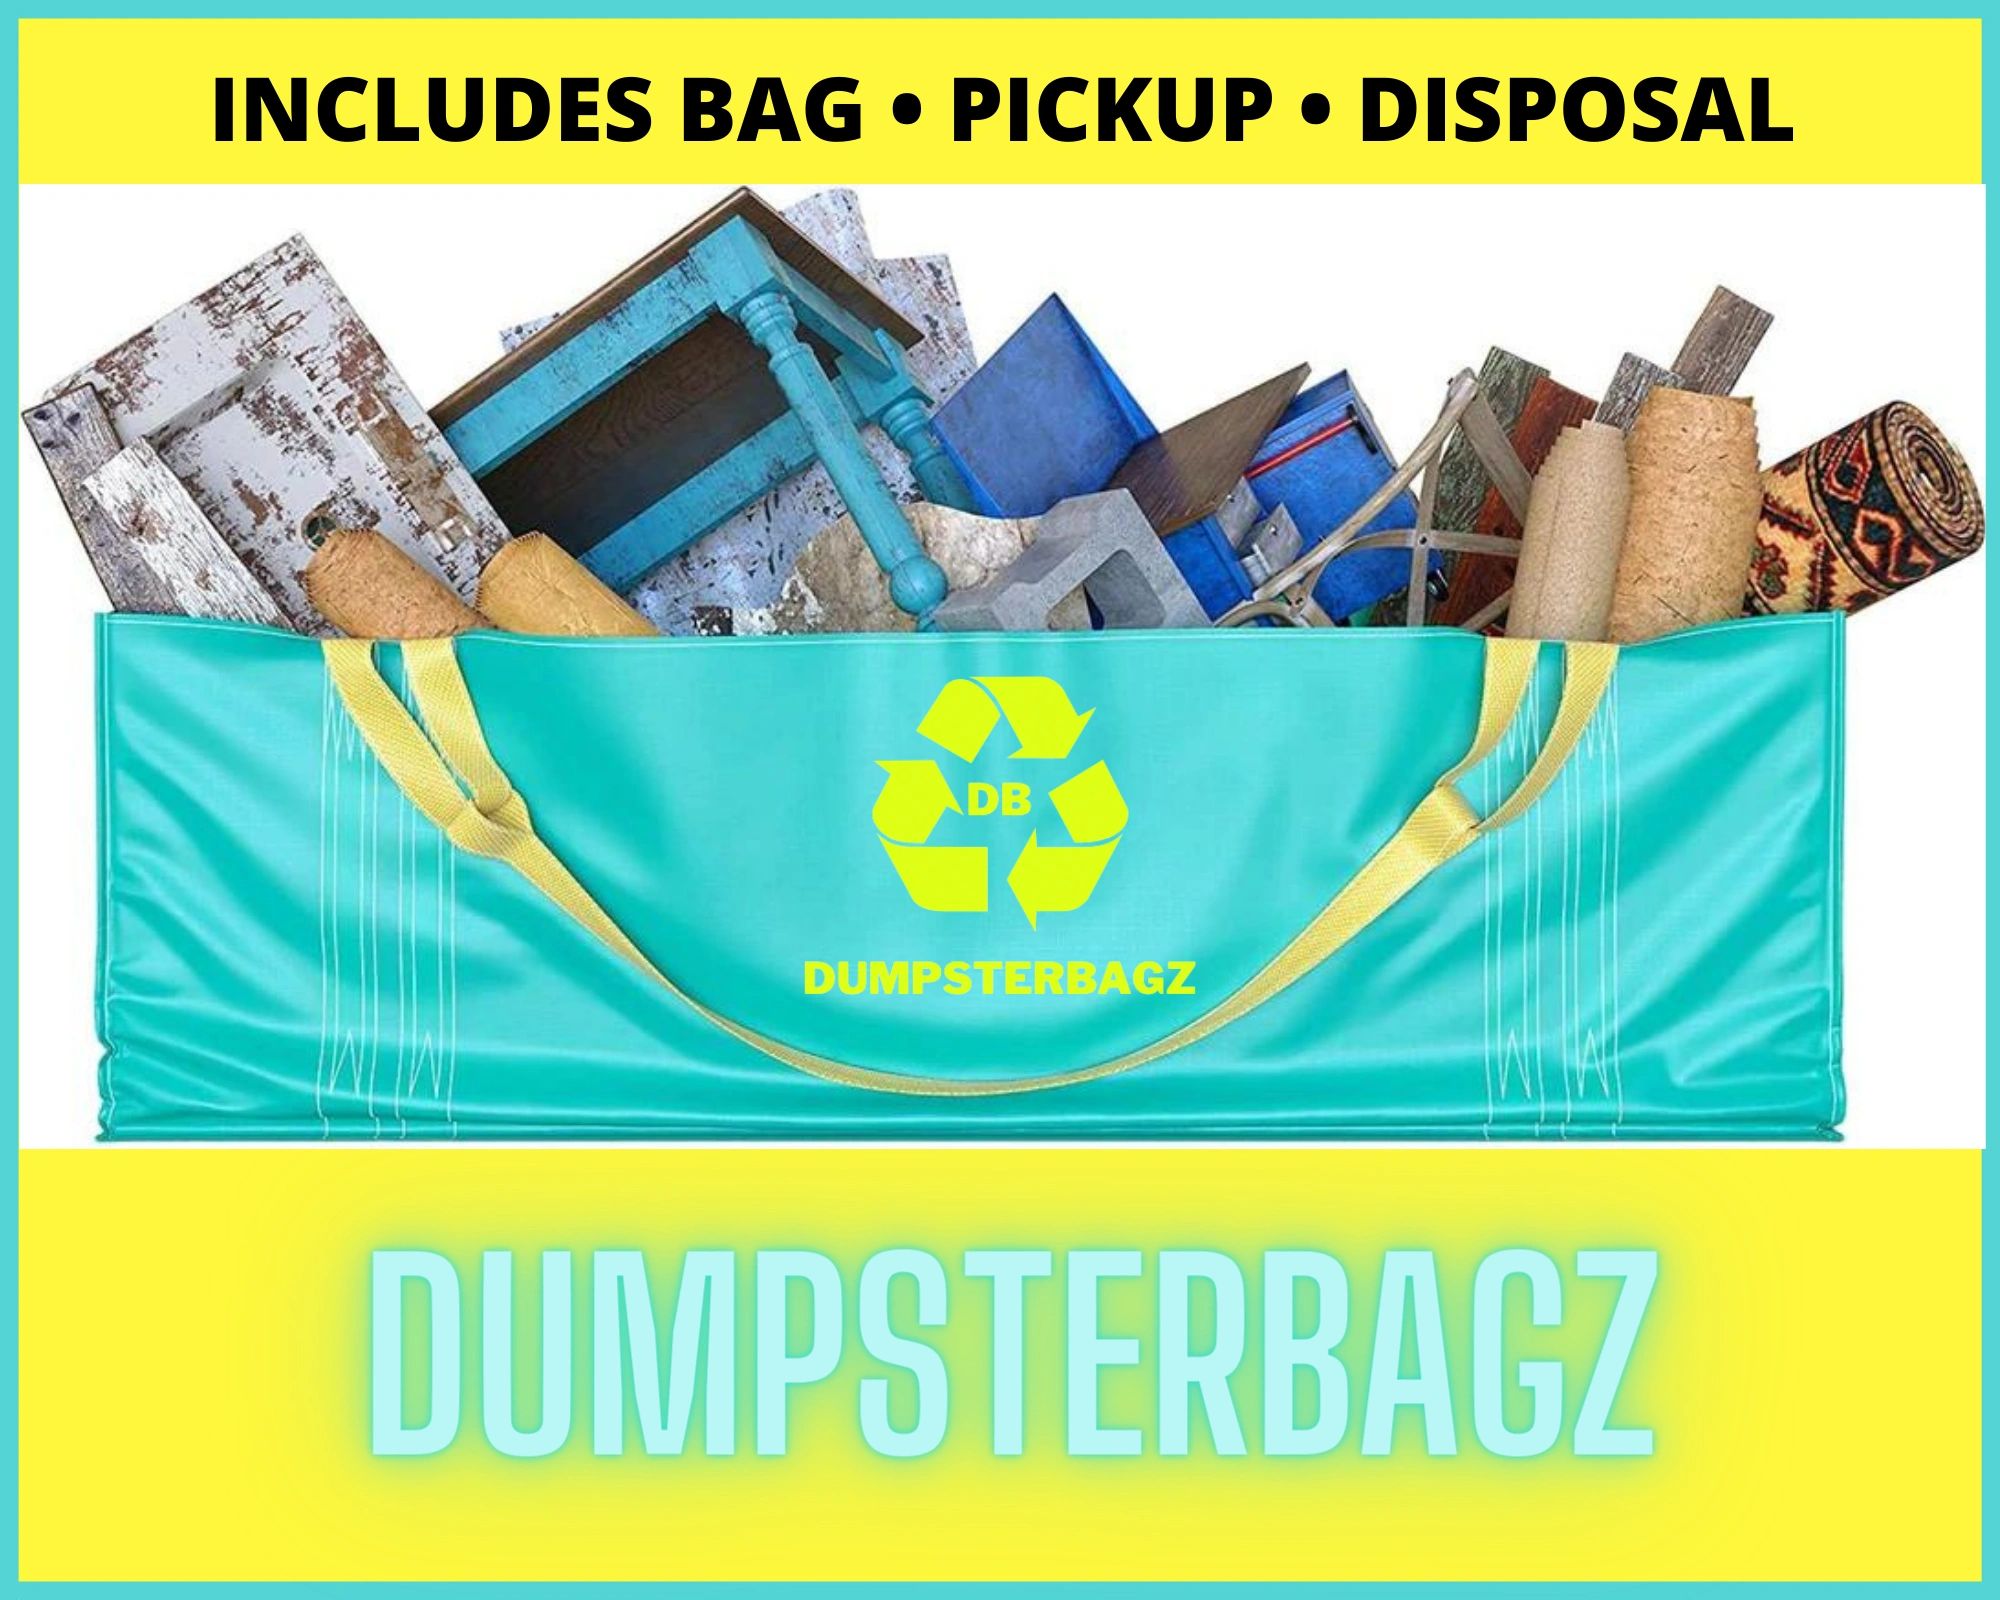 DumpsterBagz logo